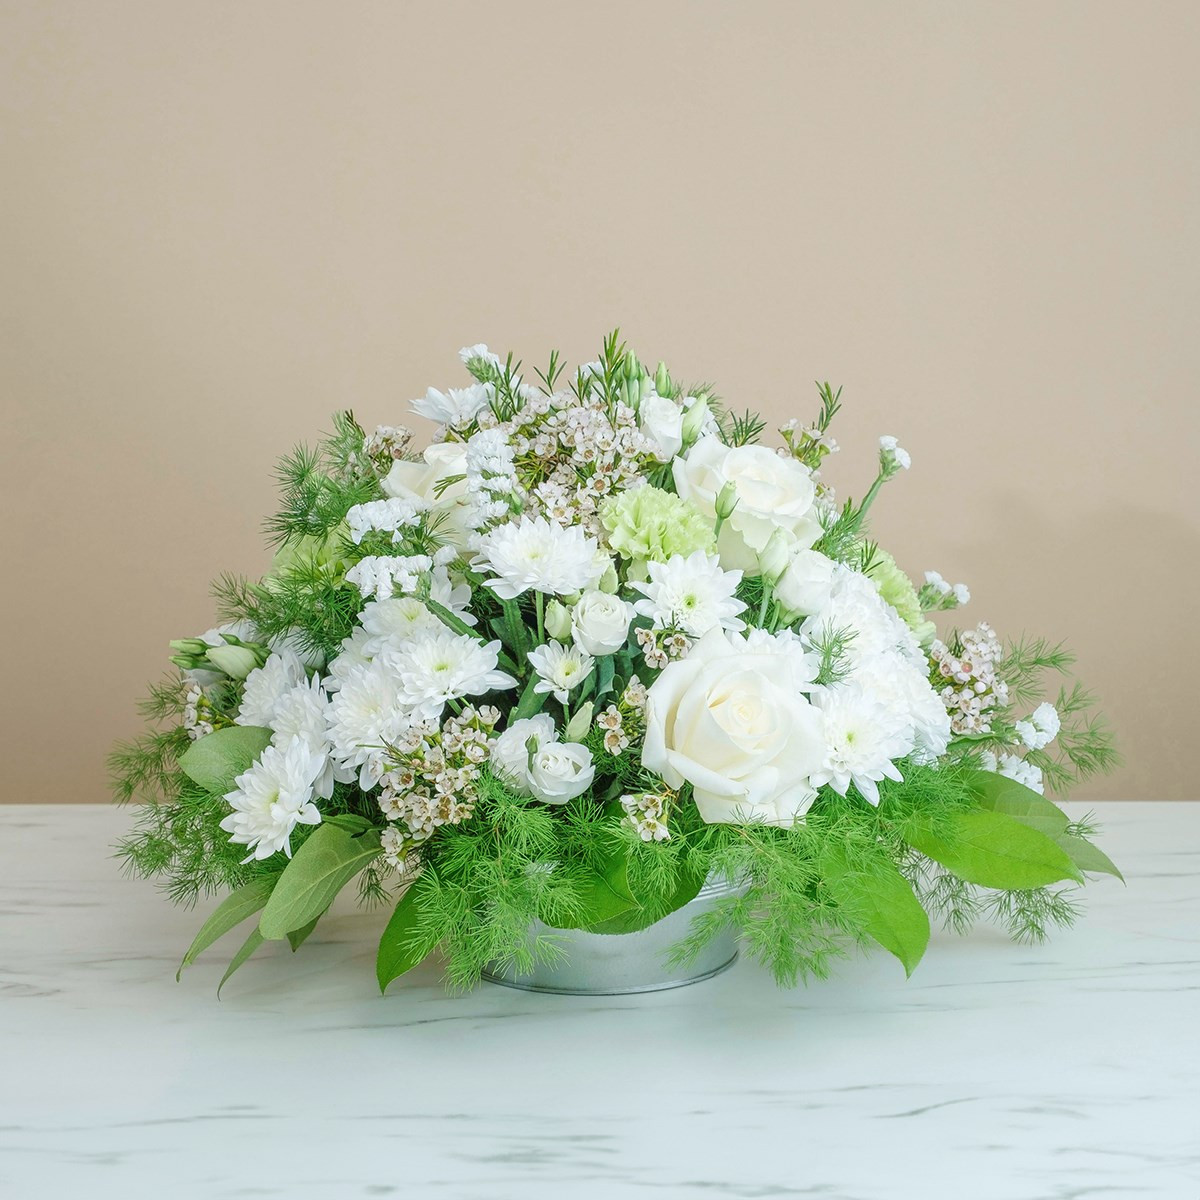 Aranżacja pogrzebowa z białych róż, eustom i chryzantem